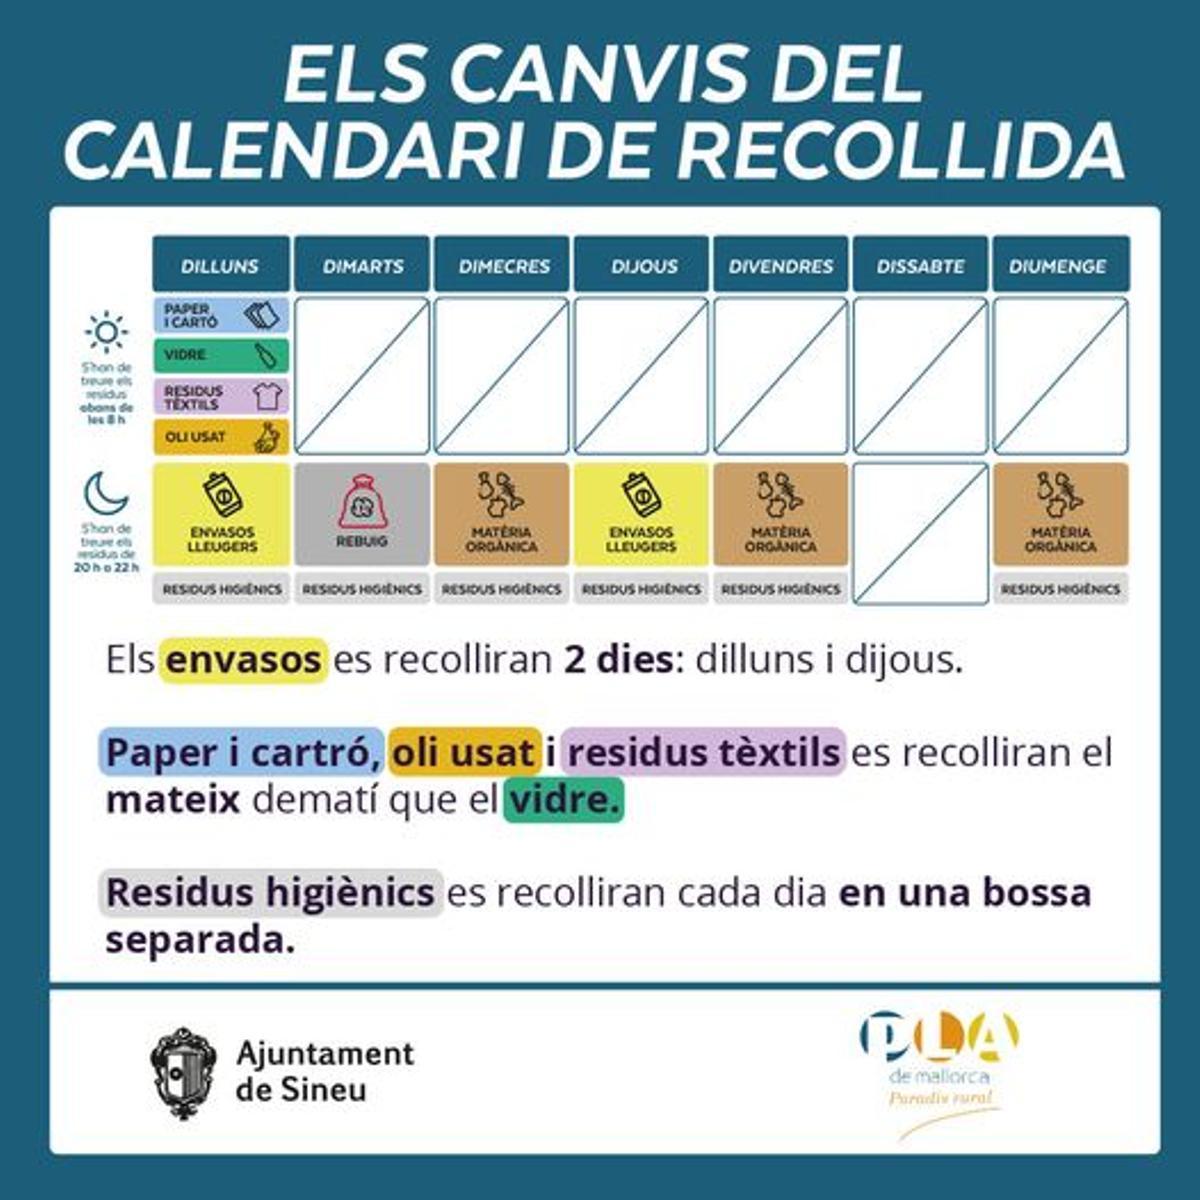 El nuevo calendario de recogida que ha distribuido el ayuntamiento de Sineu entre los vecinos.